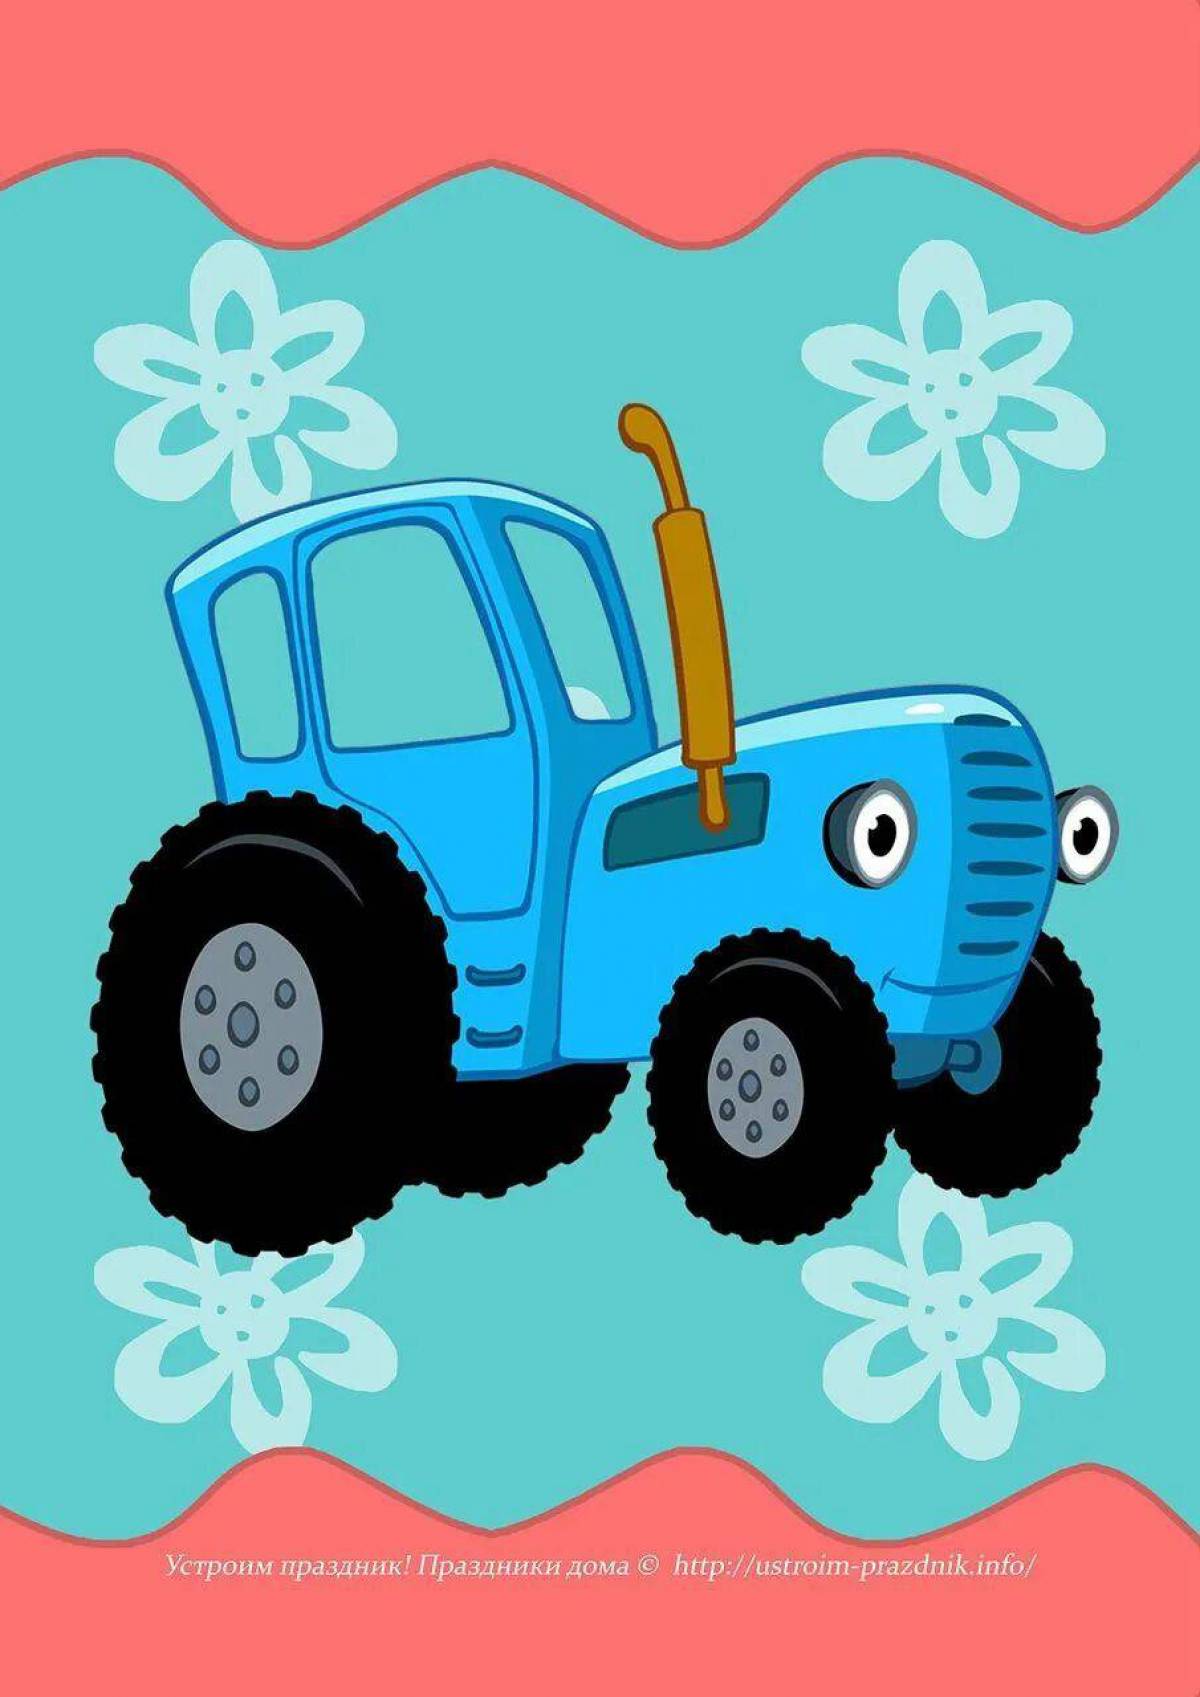 Синего трактора можно. Трактор ХТЗ синий. Синий трактор тр тр тр.